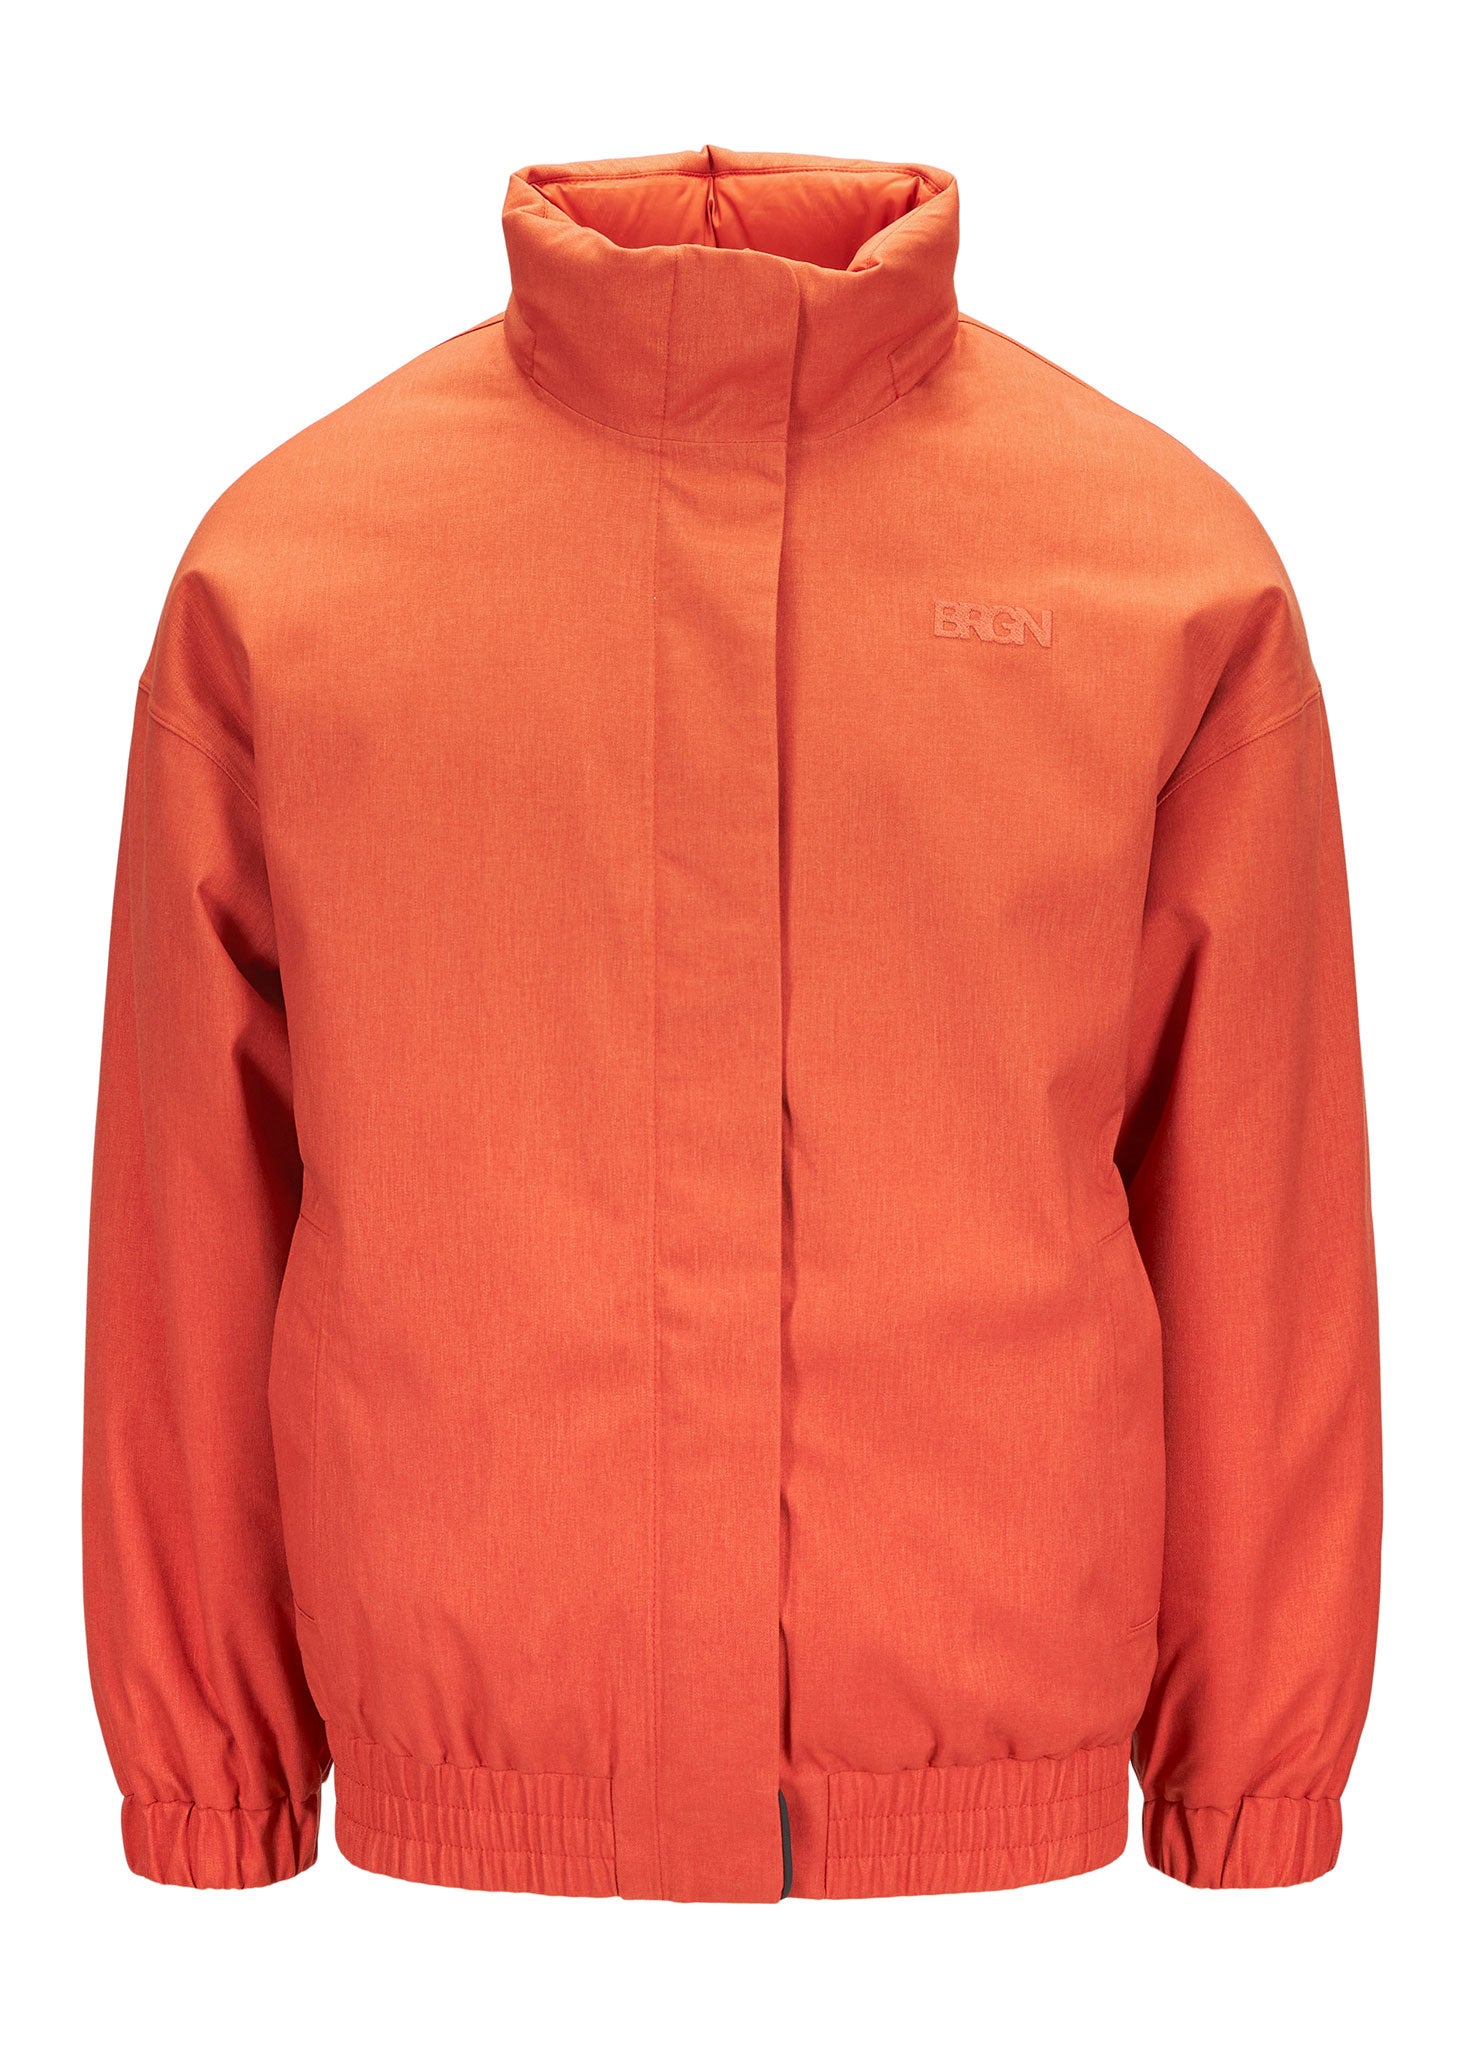 BRGN Istapp Bomber Jacket Limited edition Coats 275 Sunset Orange